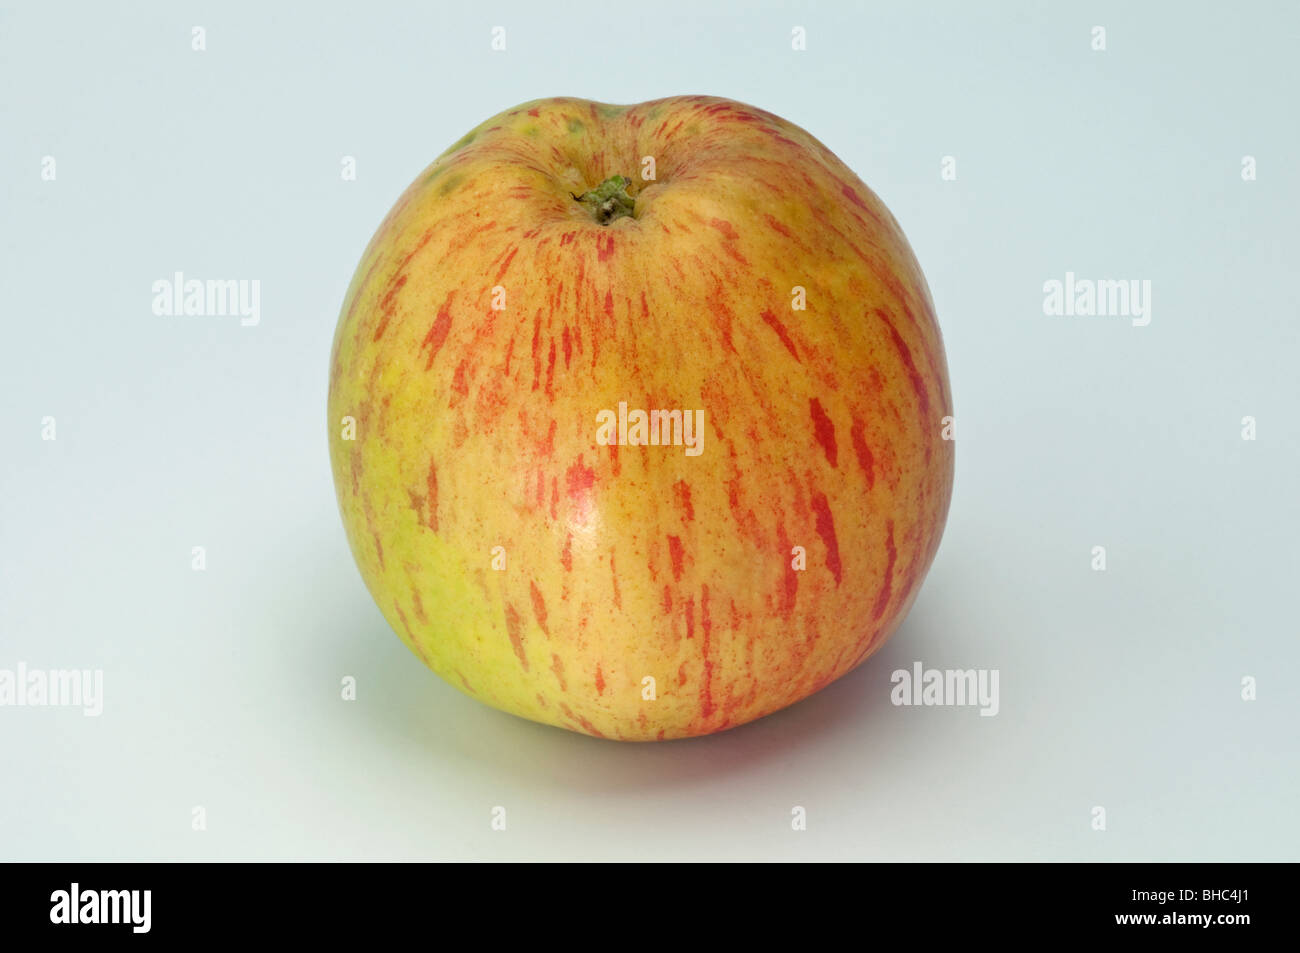 Domestic Apple (Malus domestica), variety: Lohrer Rambur, apple, studio picture. Stock Photo